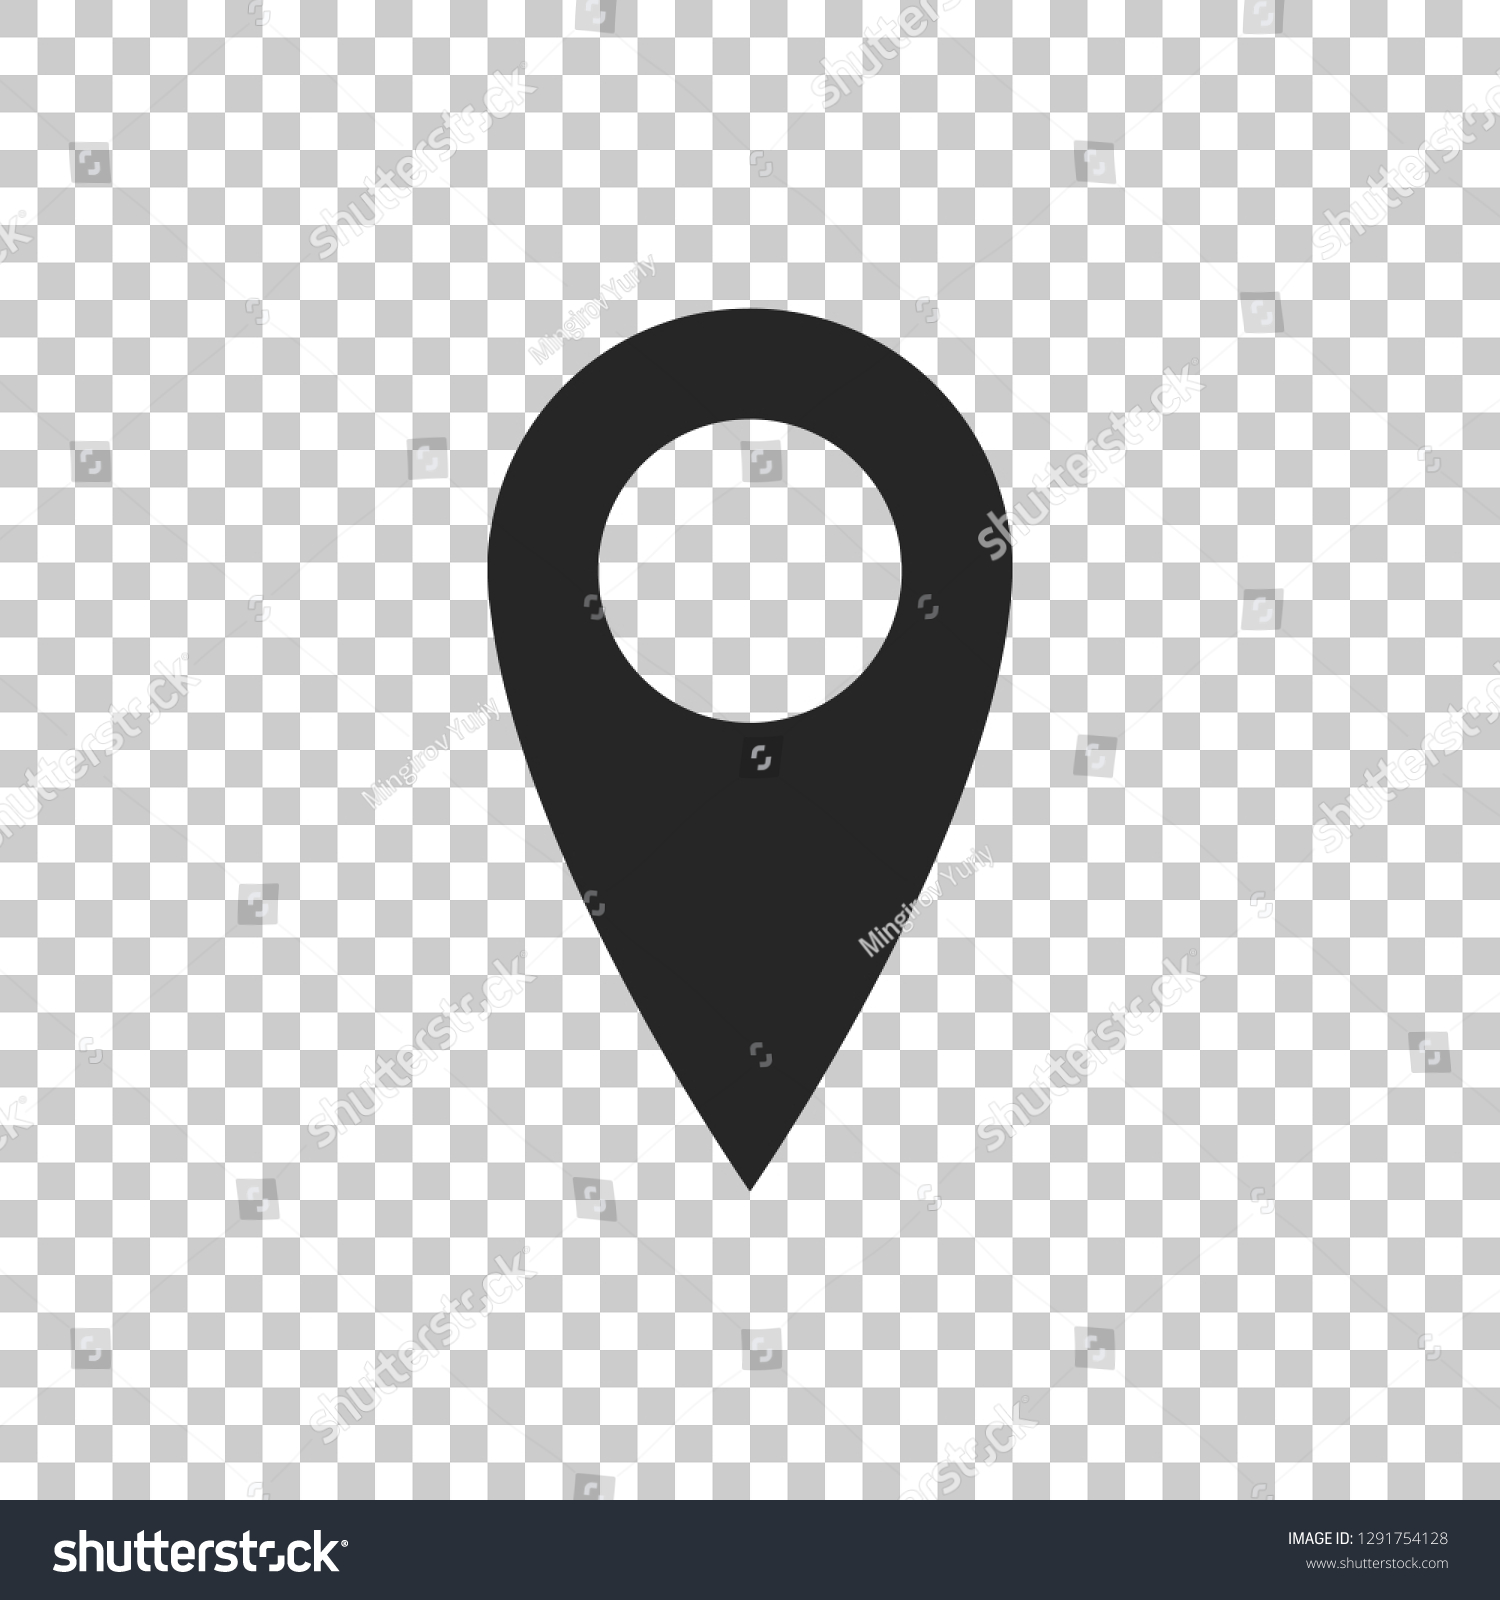 Просто местоположение. Геолокация значок. Местоположение на карте значок иконка. Значок местоположения для визитки. Иконка местоположения белая на черном фоне.